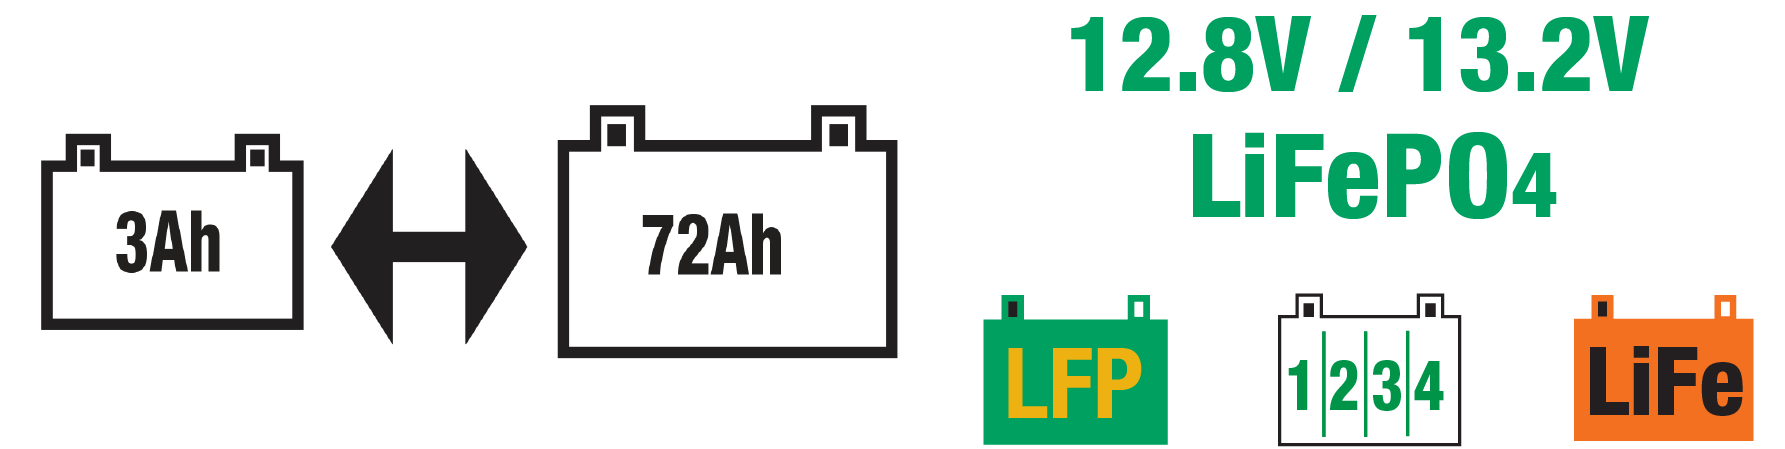 optimate lfp 4s 6a est idéal pour les batteries lifepo4/lfp de 12.8v/13.2v